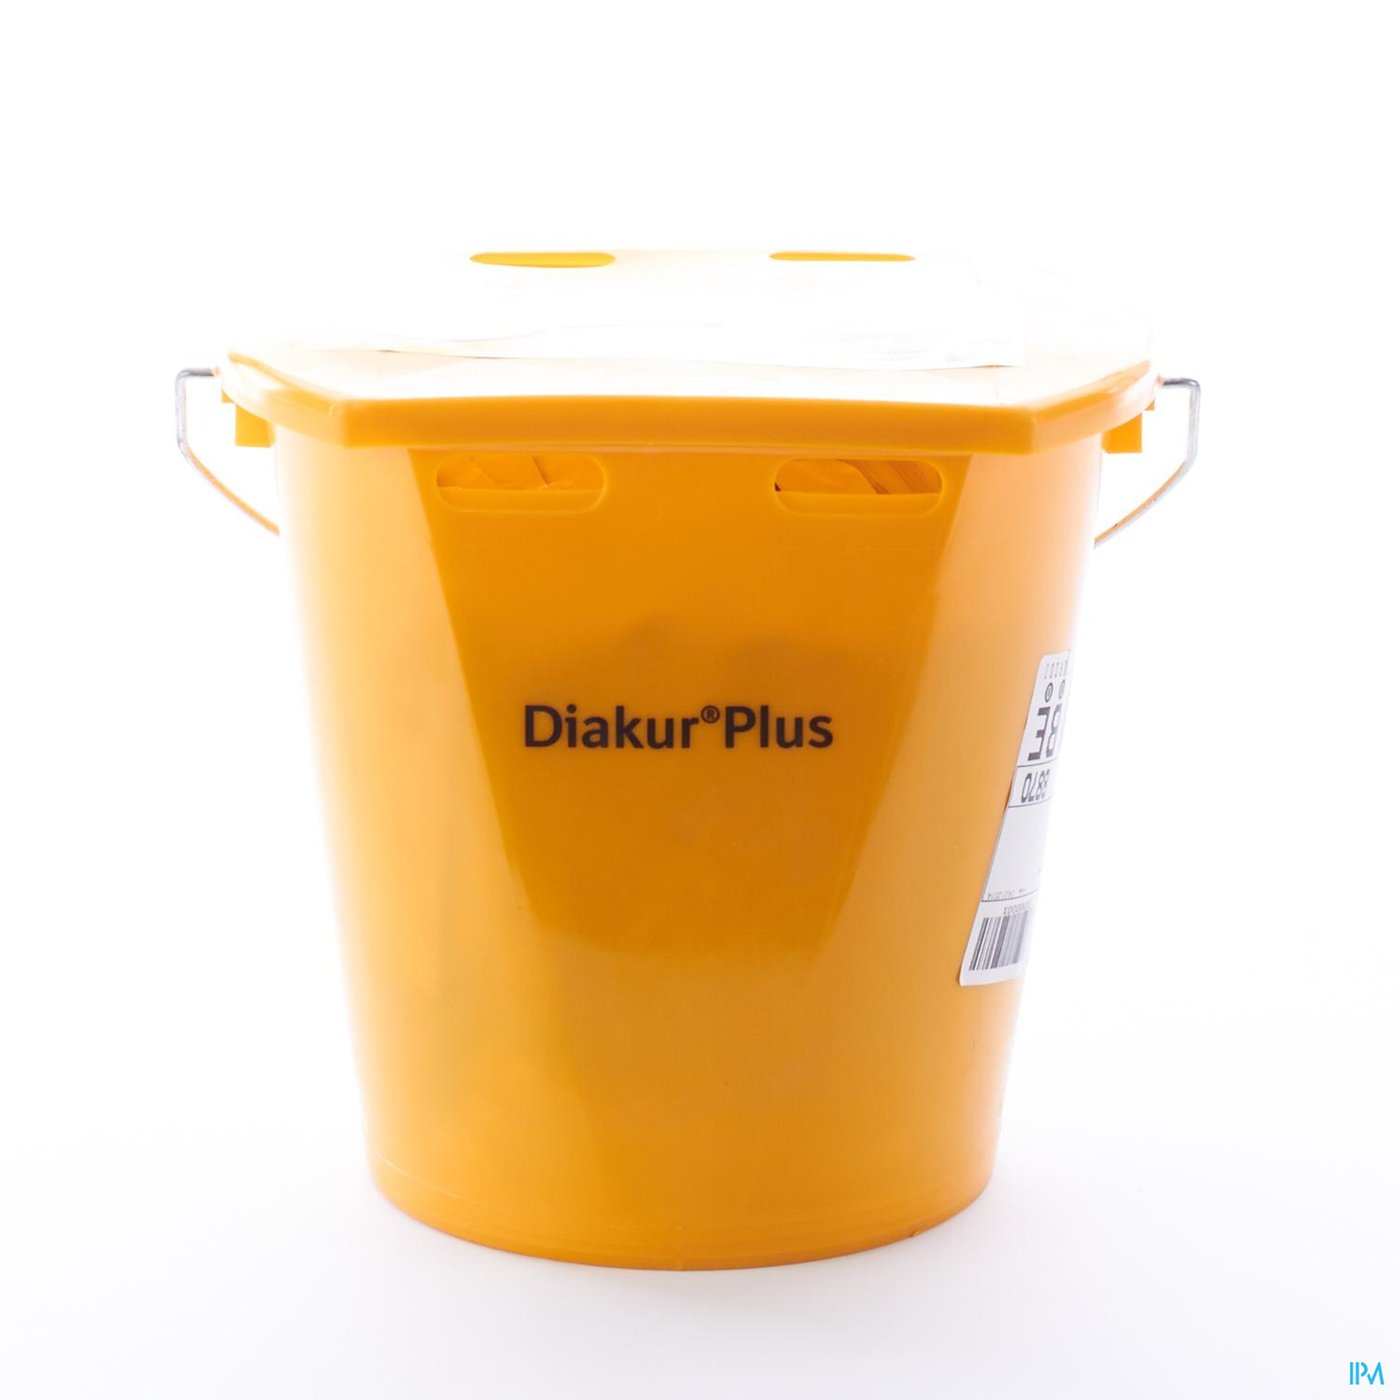 Diakur Plus Plus 24x100g packshot